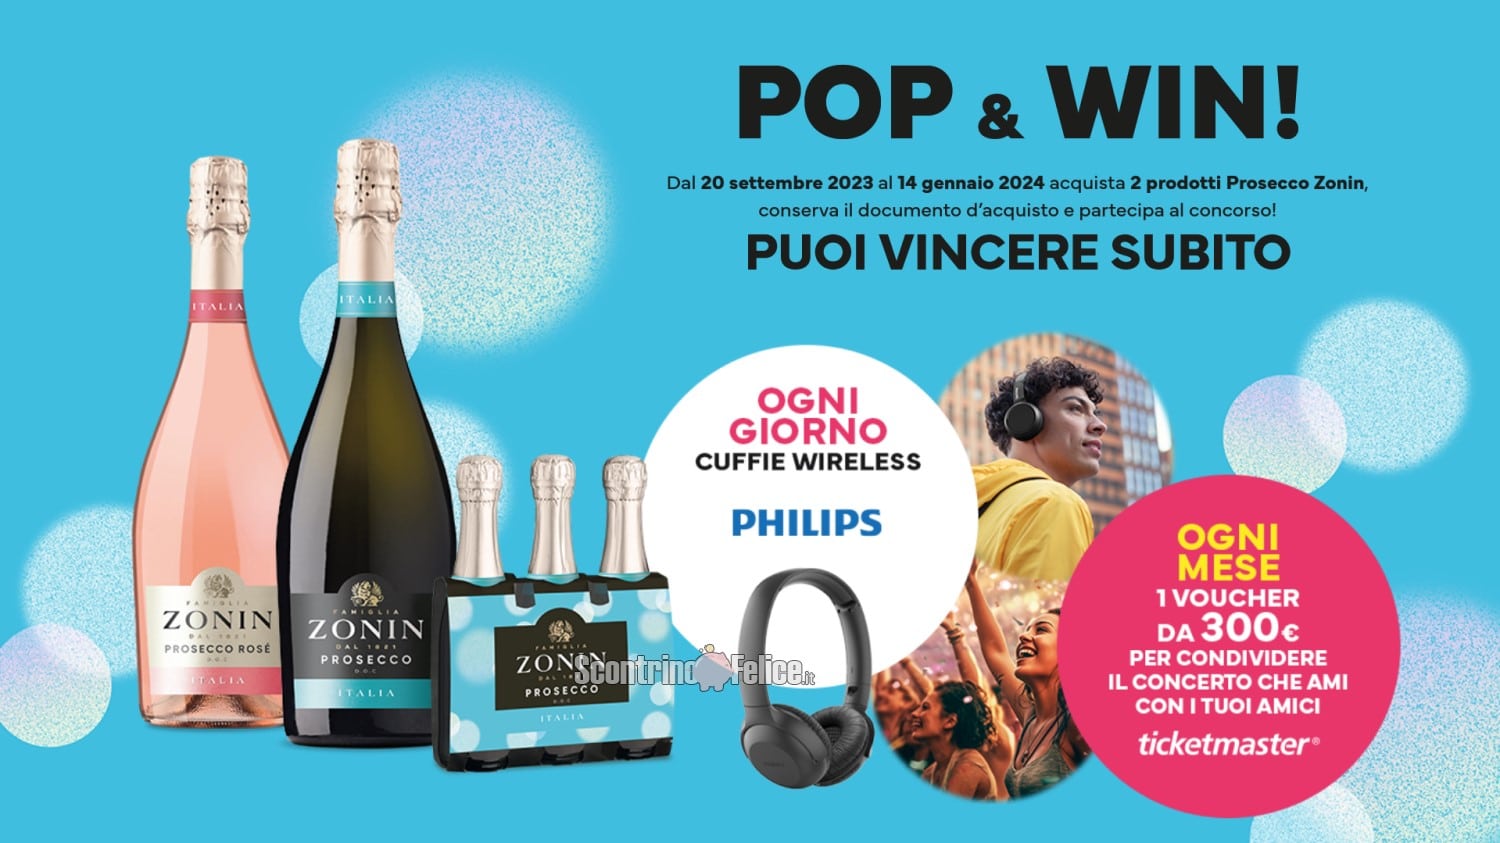 Concorso Zonin: vinci cuffie Philips e voucher Ticketmaster da 300 euro